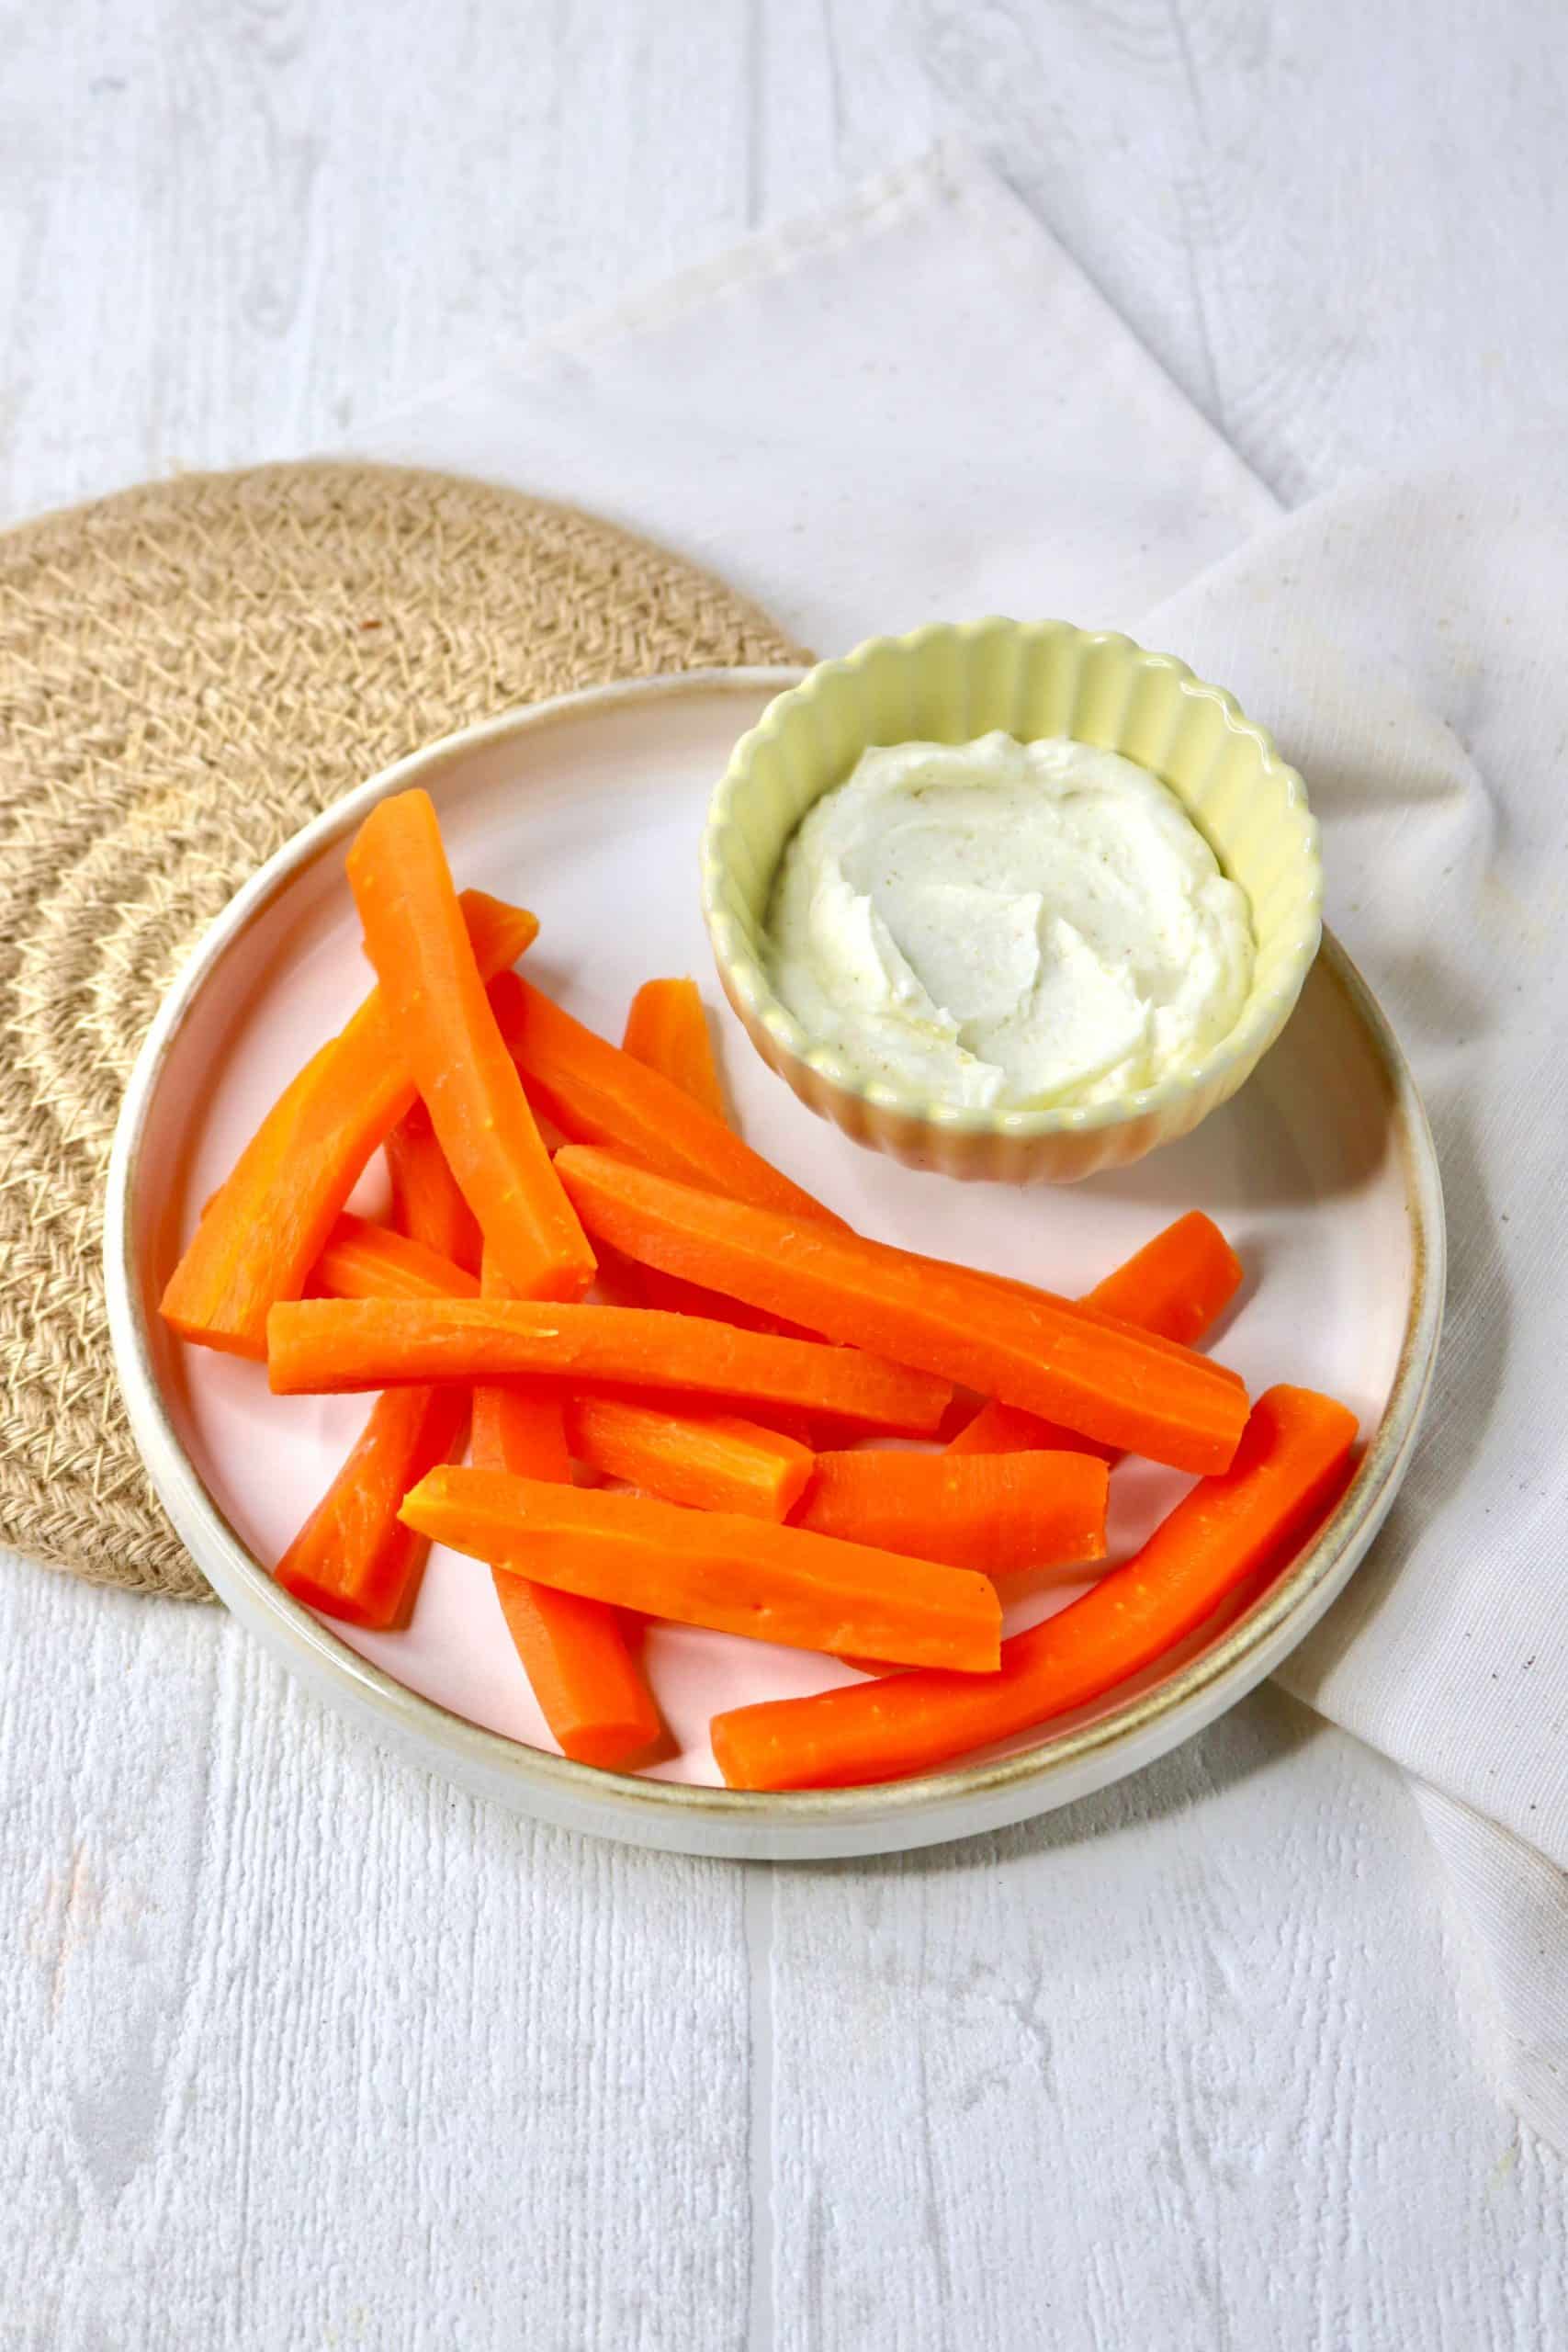 Bâtonnets de carotte et sauce blanche épicée